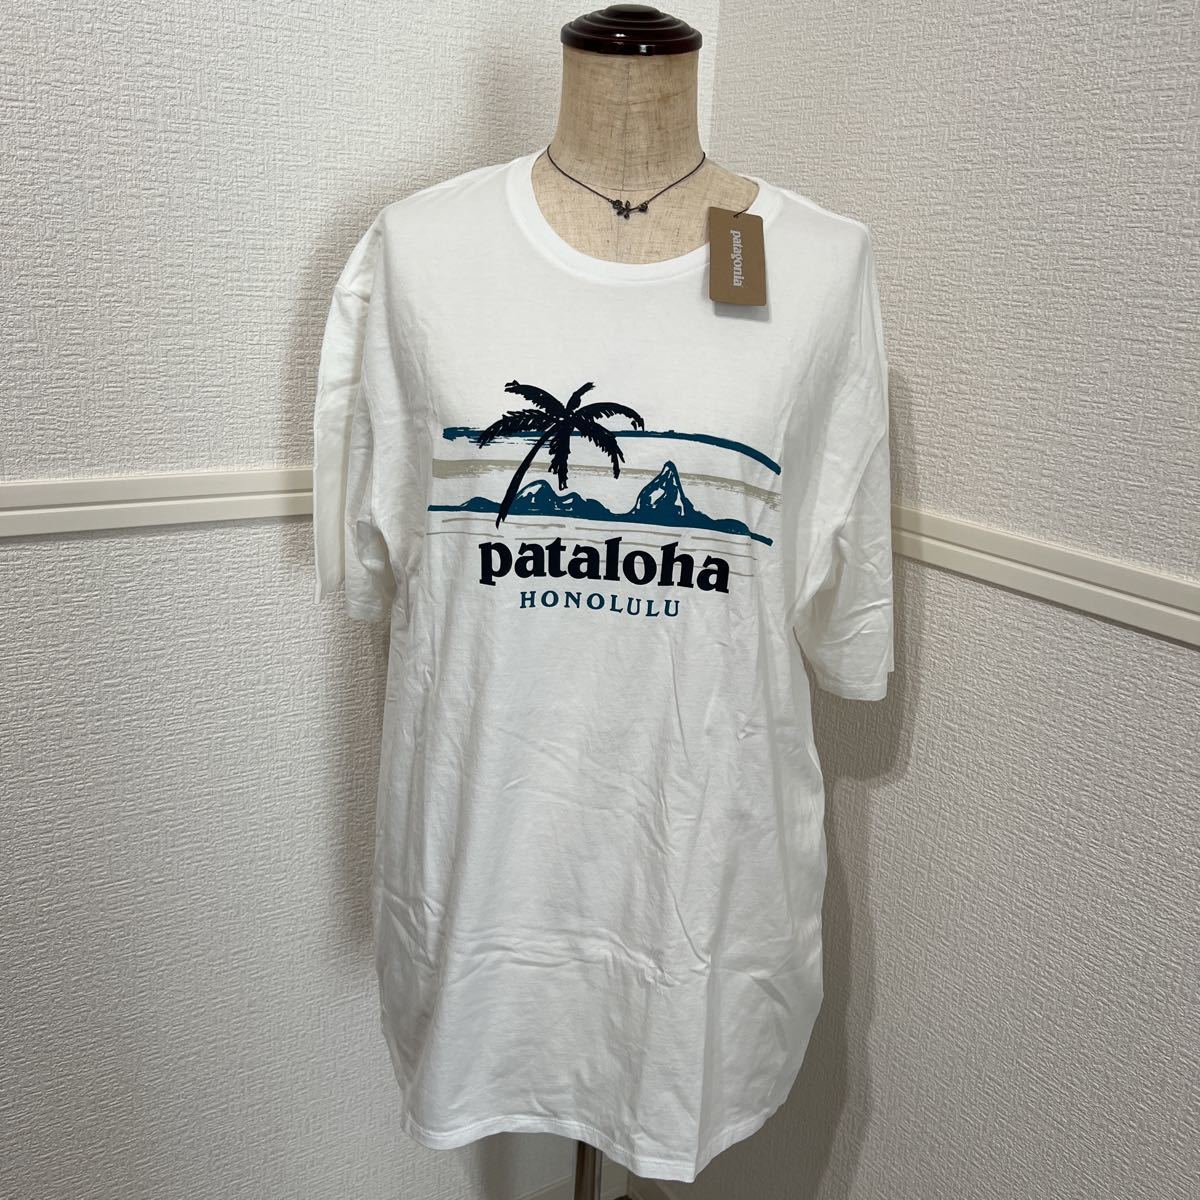 新品 Patagonia パタゴニア pataloha パタロハ Tシャツ 半袖 ホワイト M メンズ オーガニックコットン 半袖Tシャツ ハワイ限定 Honolulu